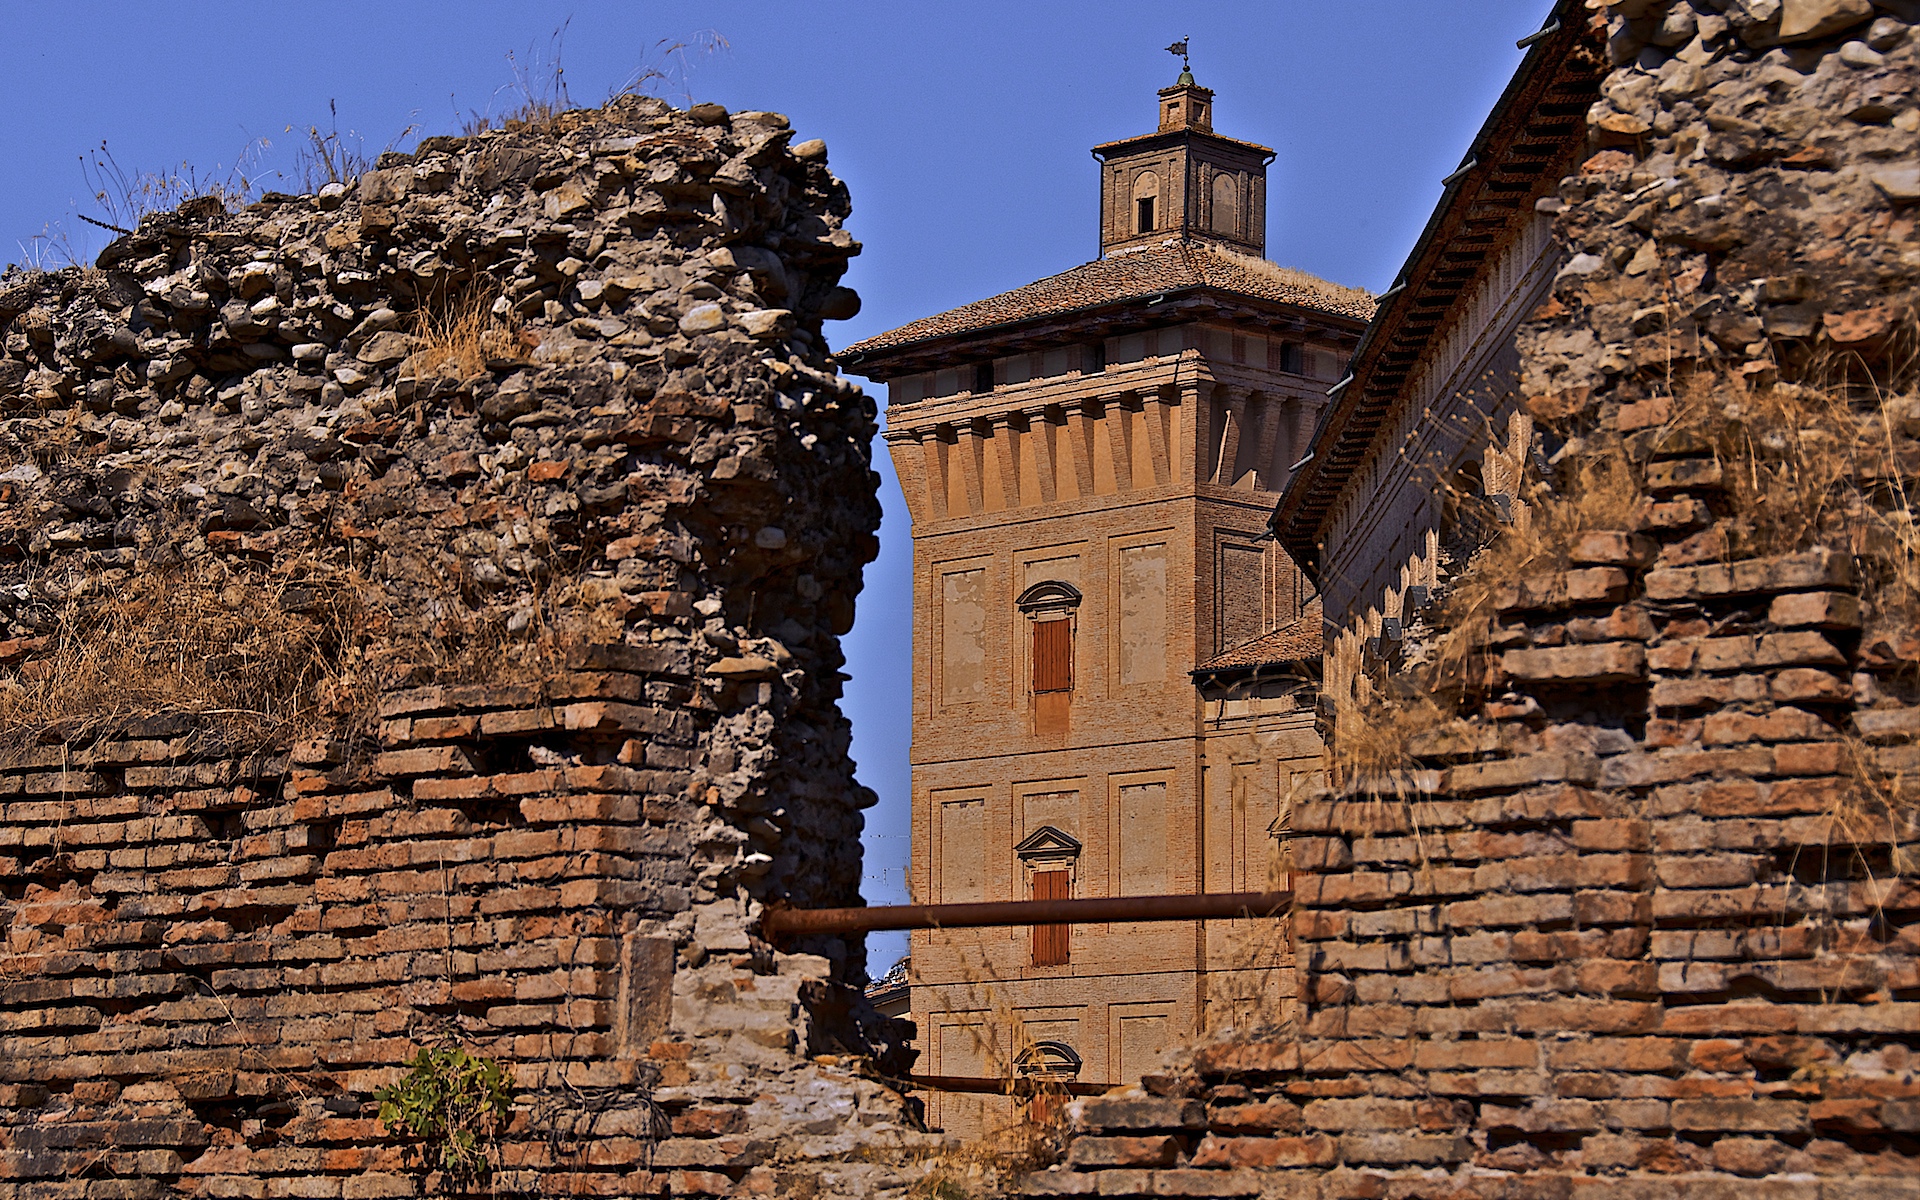 photo: https://upload.wikimedia.org/wikipedia/commons/3/32/La_Torre_della_Rocca_dei_Boiardo.jpg